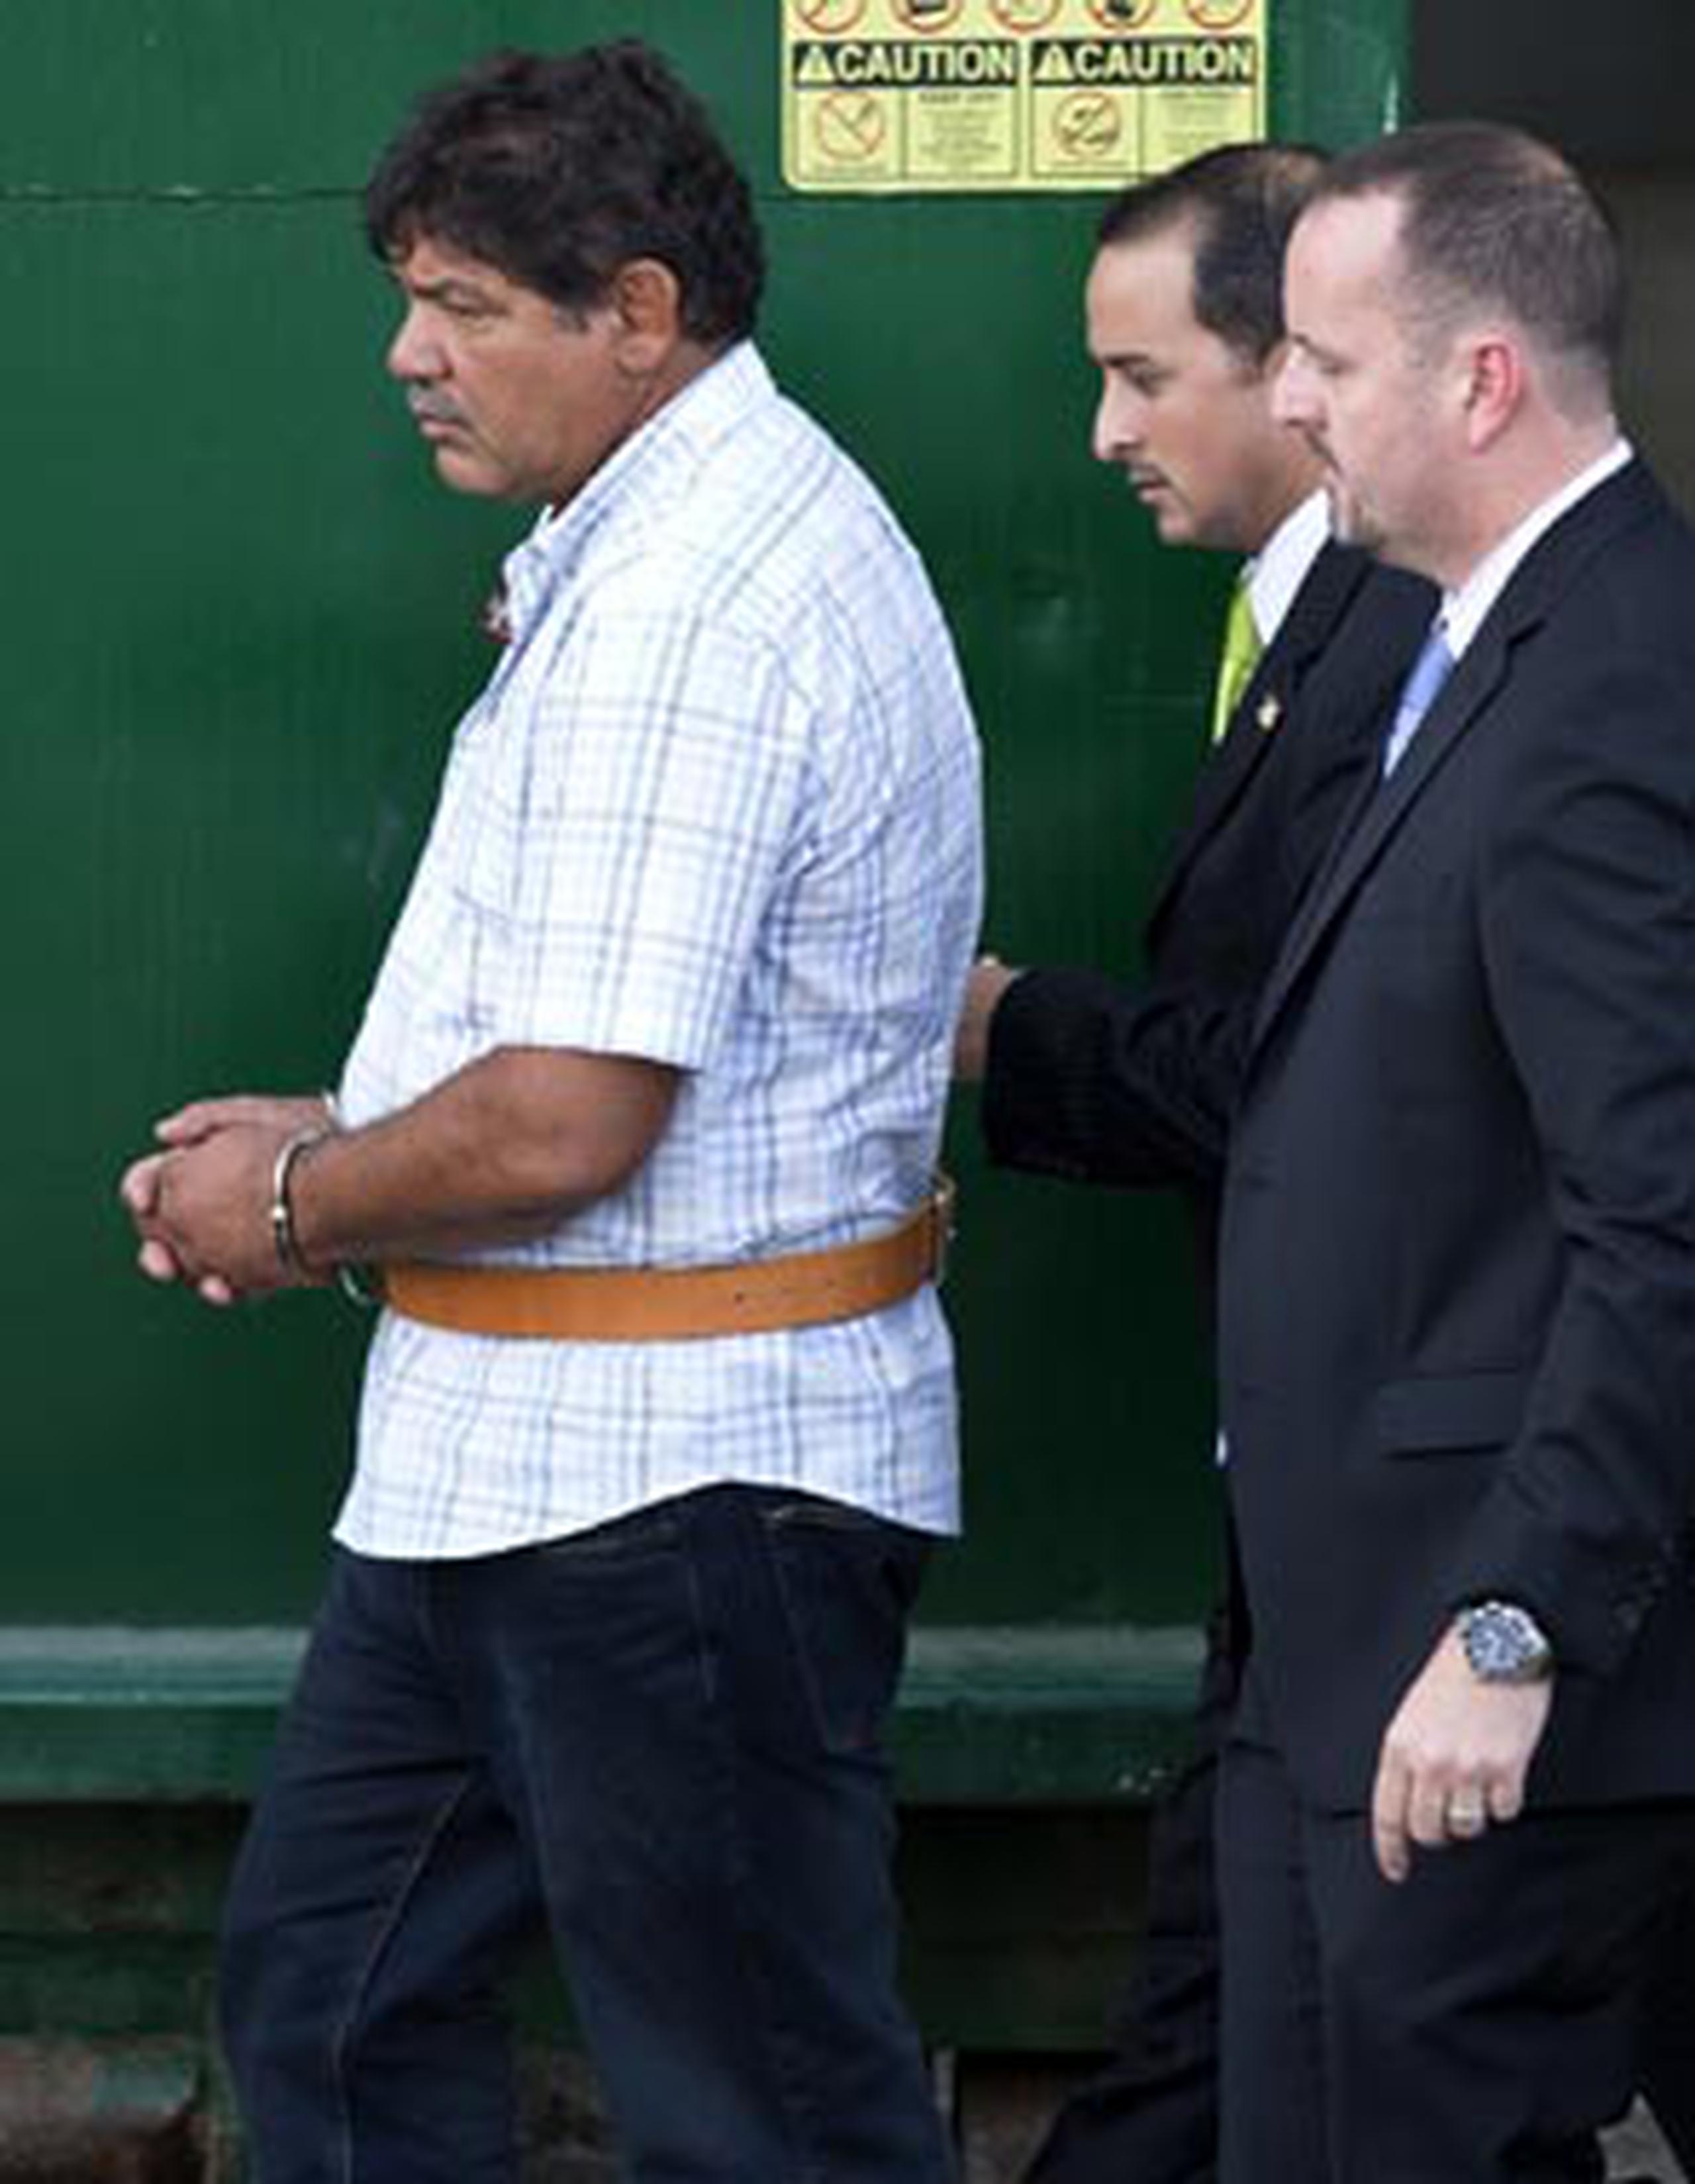 Rivera Correa está confinado en el Centro de Detención Metropolitano (MDC, por sus siglas en inglés), en Guaynabo desde el pasado viernes cuando se le radicaron las acusaciones federales. (jorge.ramirez@gfrmedia.com)